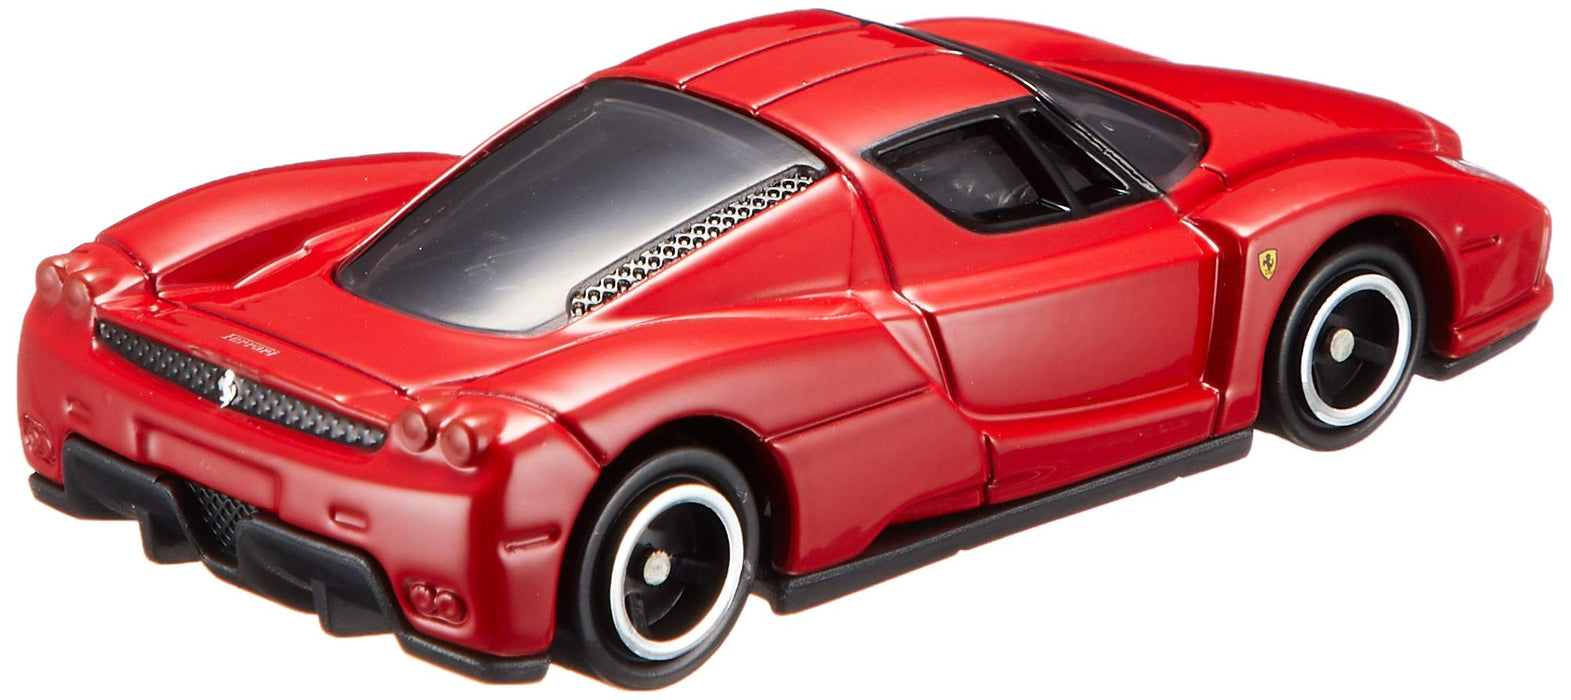 Takara Tomy Tomica 11 Enzo Ferrari 799184 1/62 modèle de voiture à échelle en plastique japonais